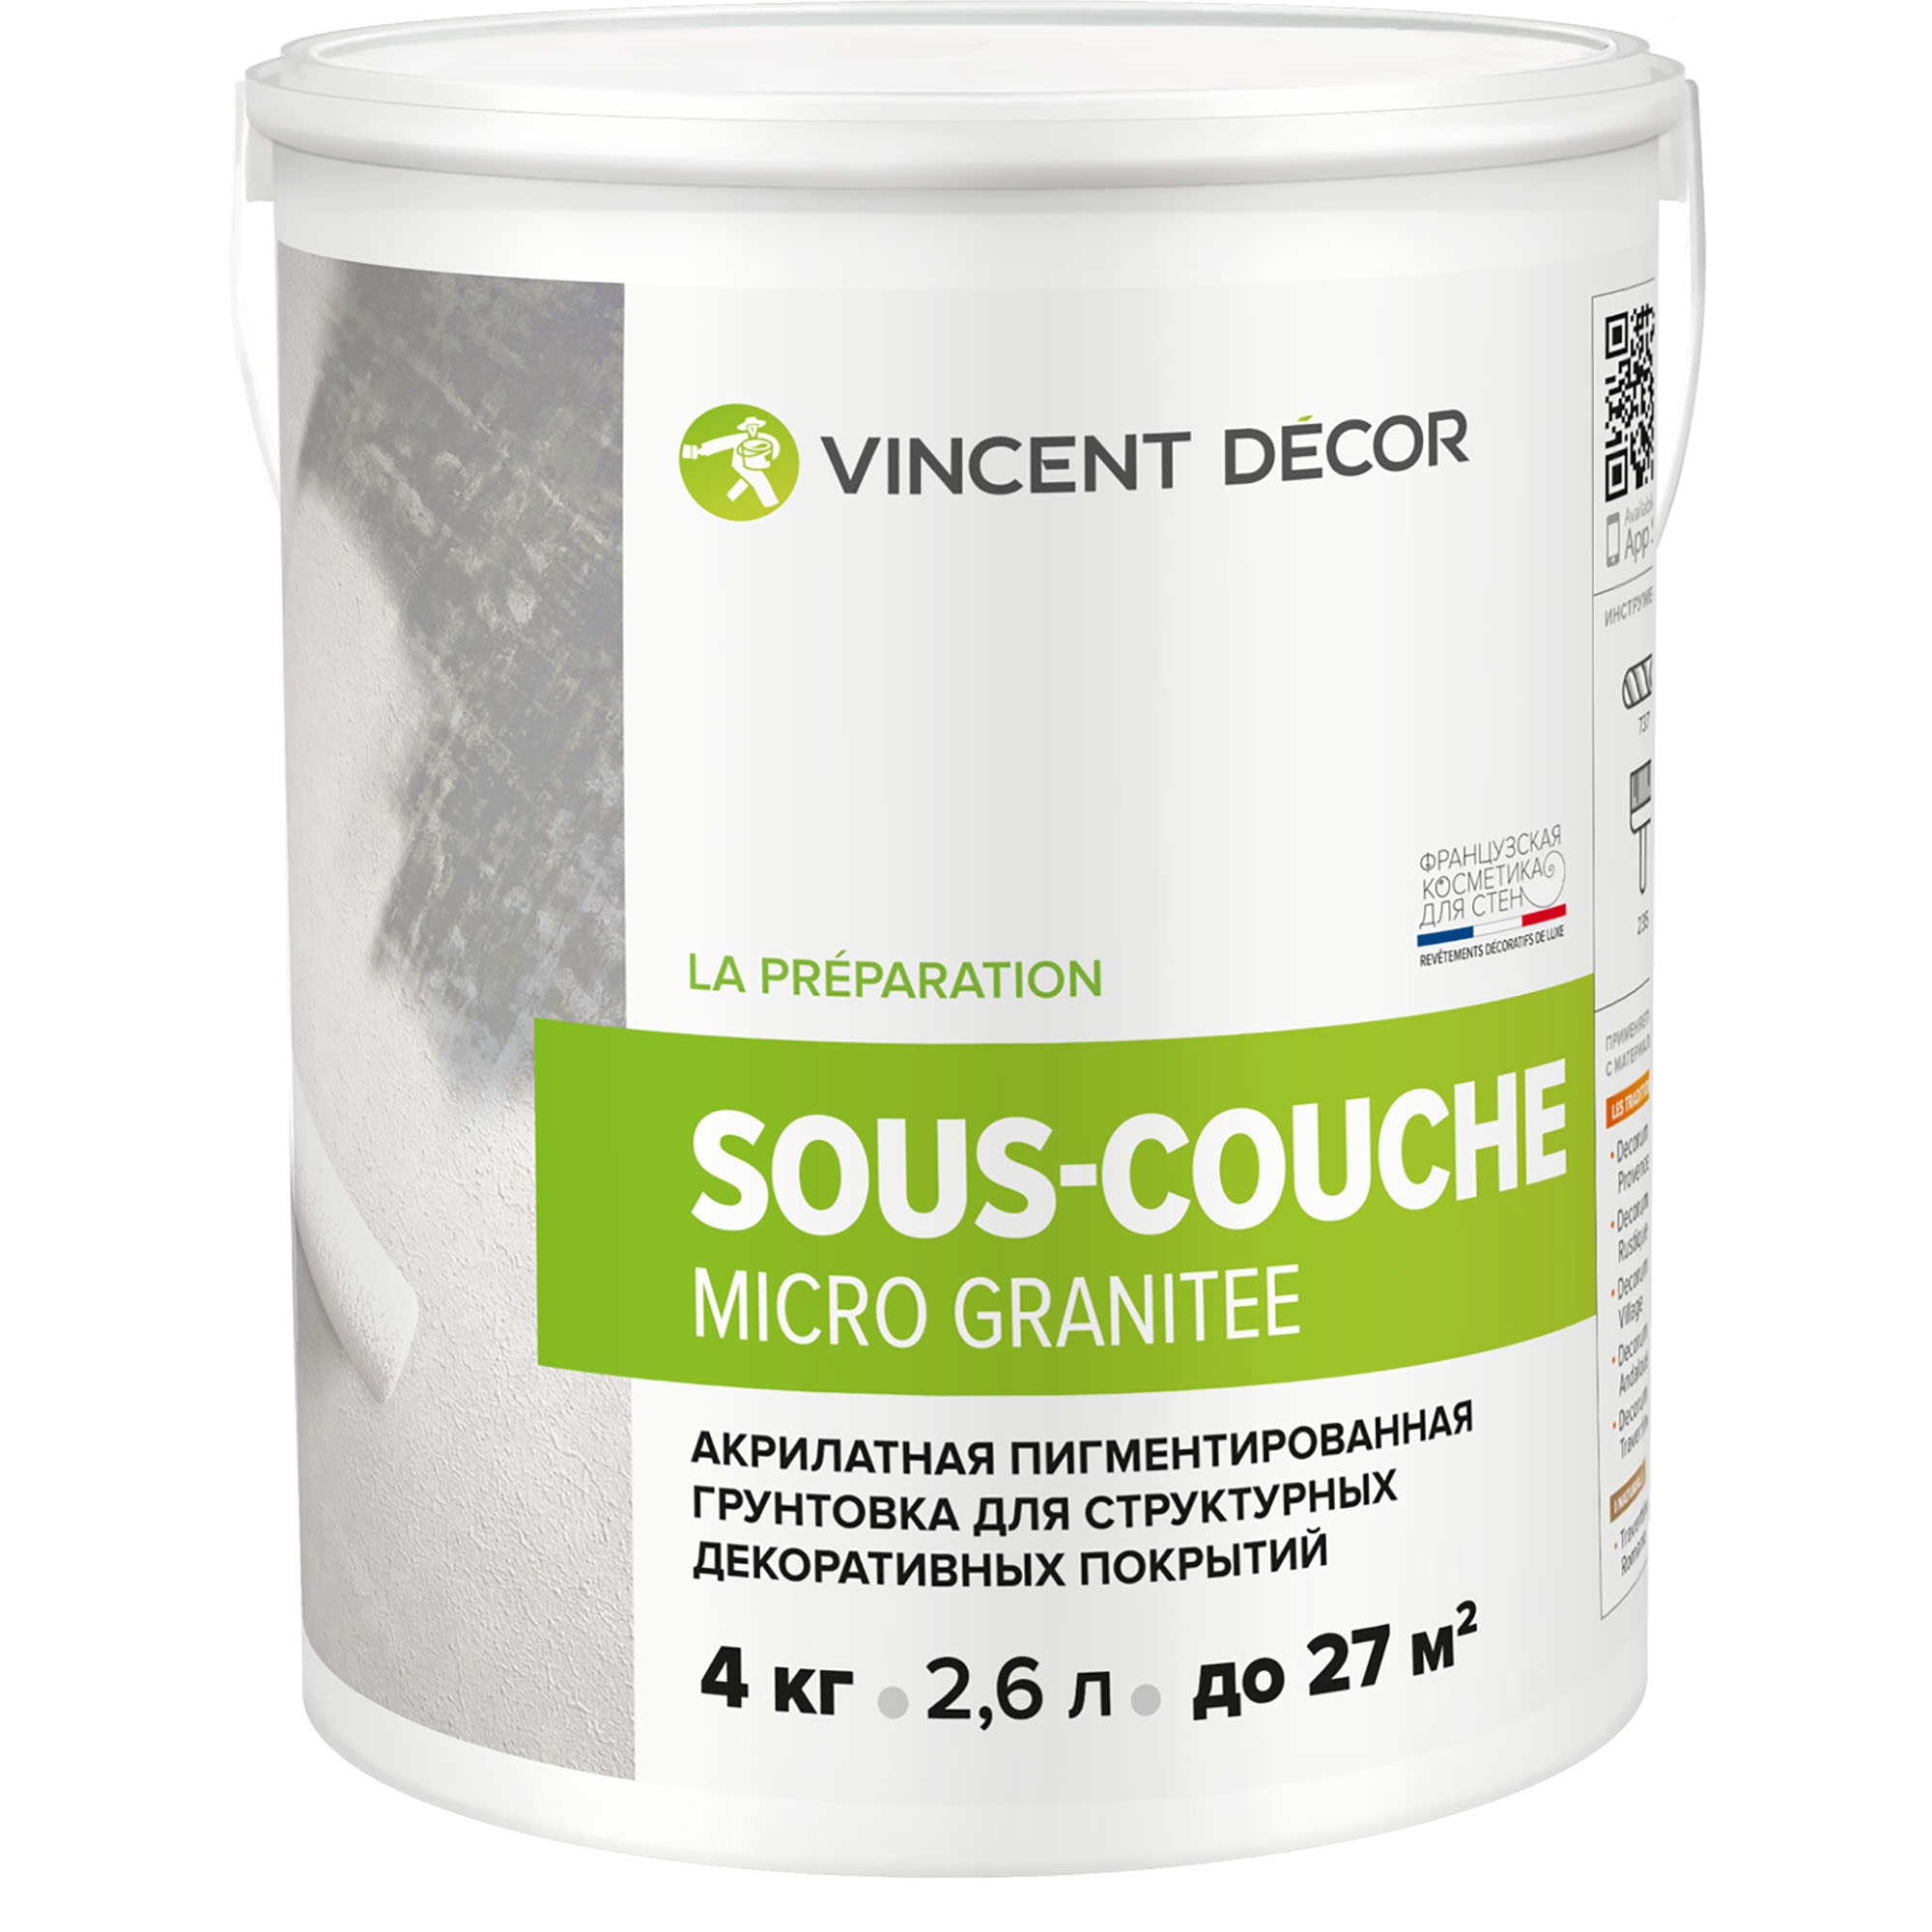 Грунтовка для структурных декоративных покрытий Vincent Decor Sous-Couсhe microgranite 4 кг адгезионная грунтовка для декоративных покрытий farbitex